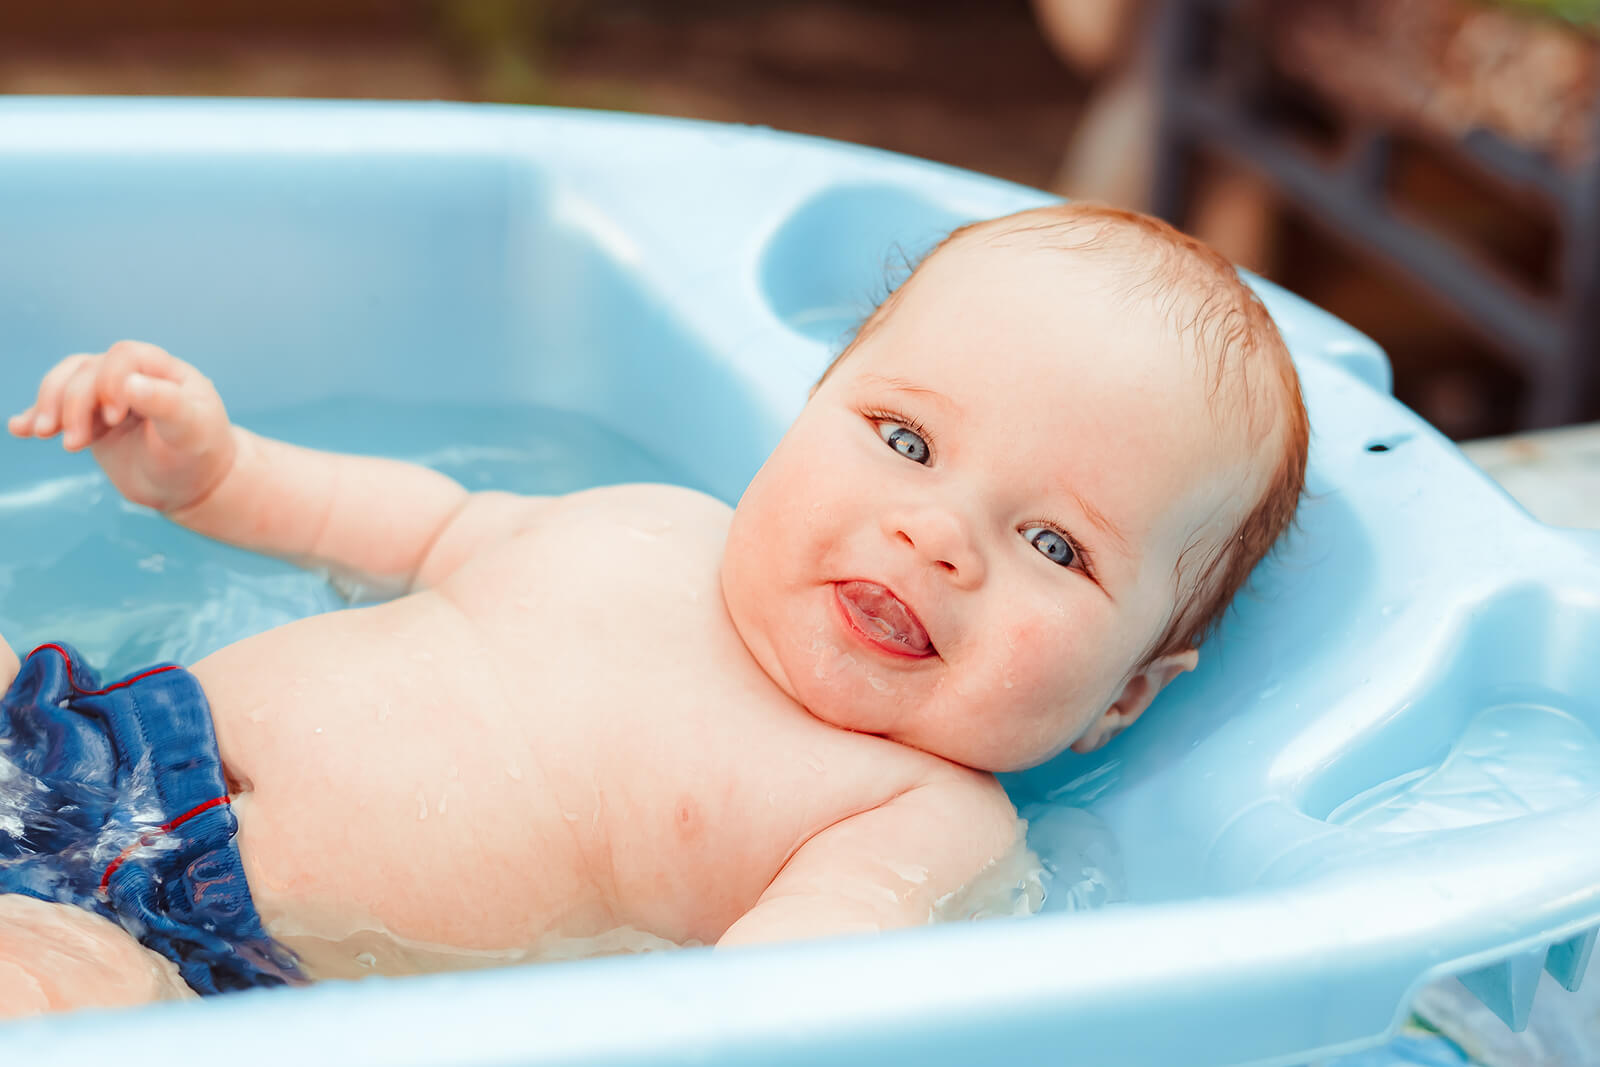 A baby lying in a baby bathtub.